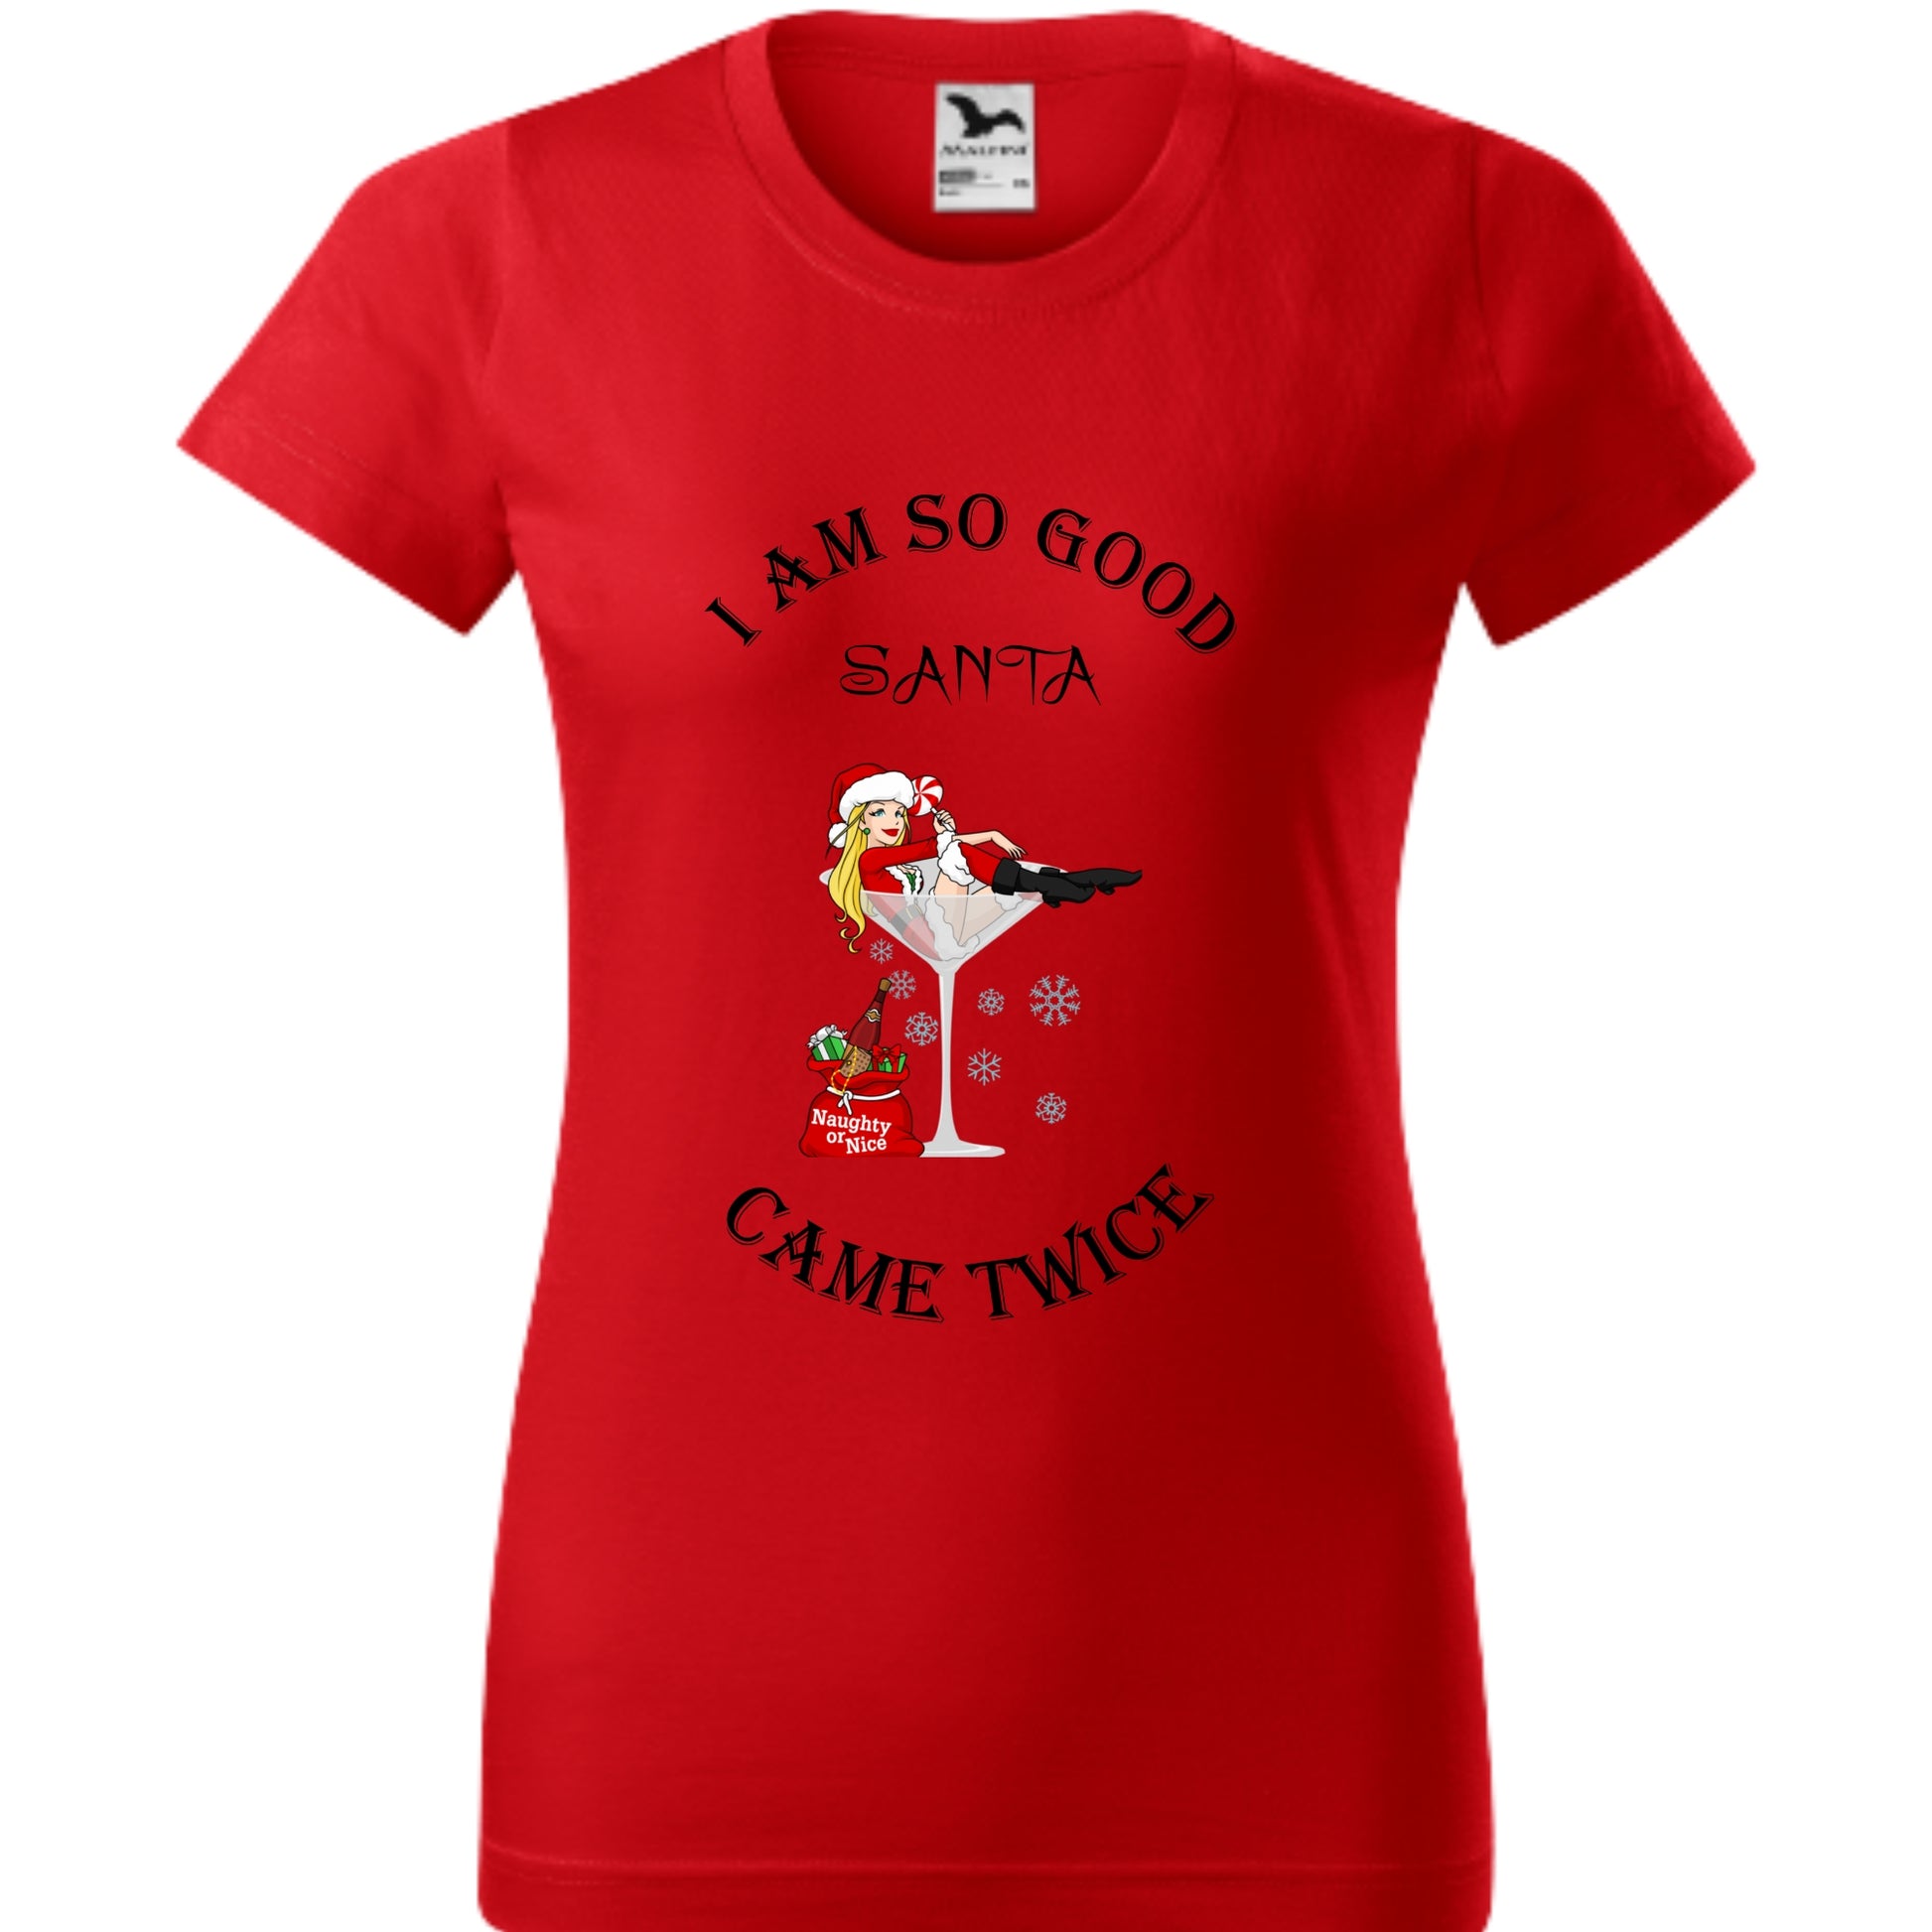 Tricou personalizat Craciun cu mesajul I Am So Good Santa Came Twice